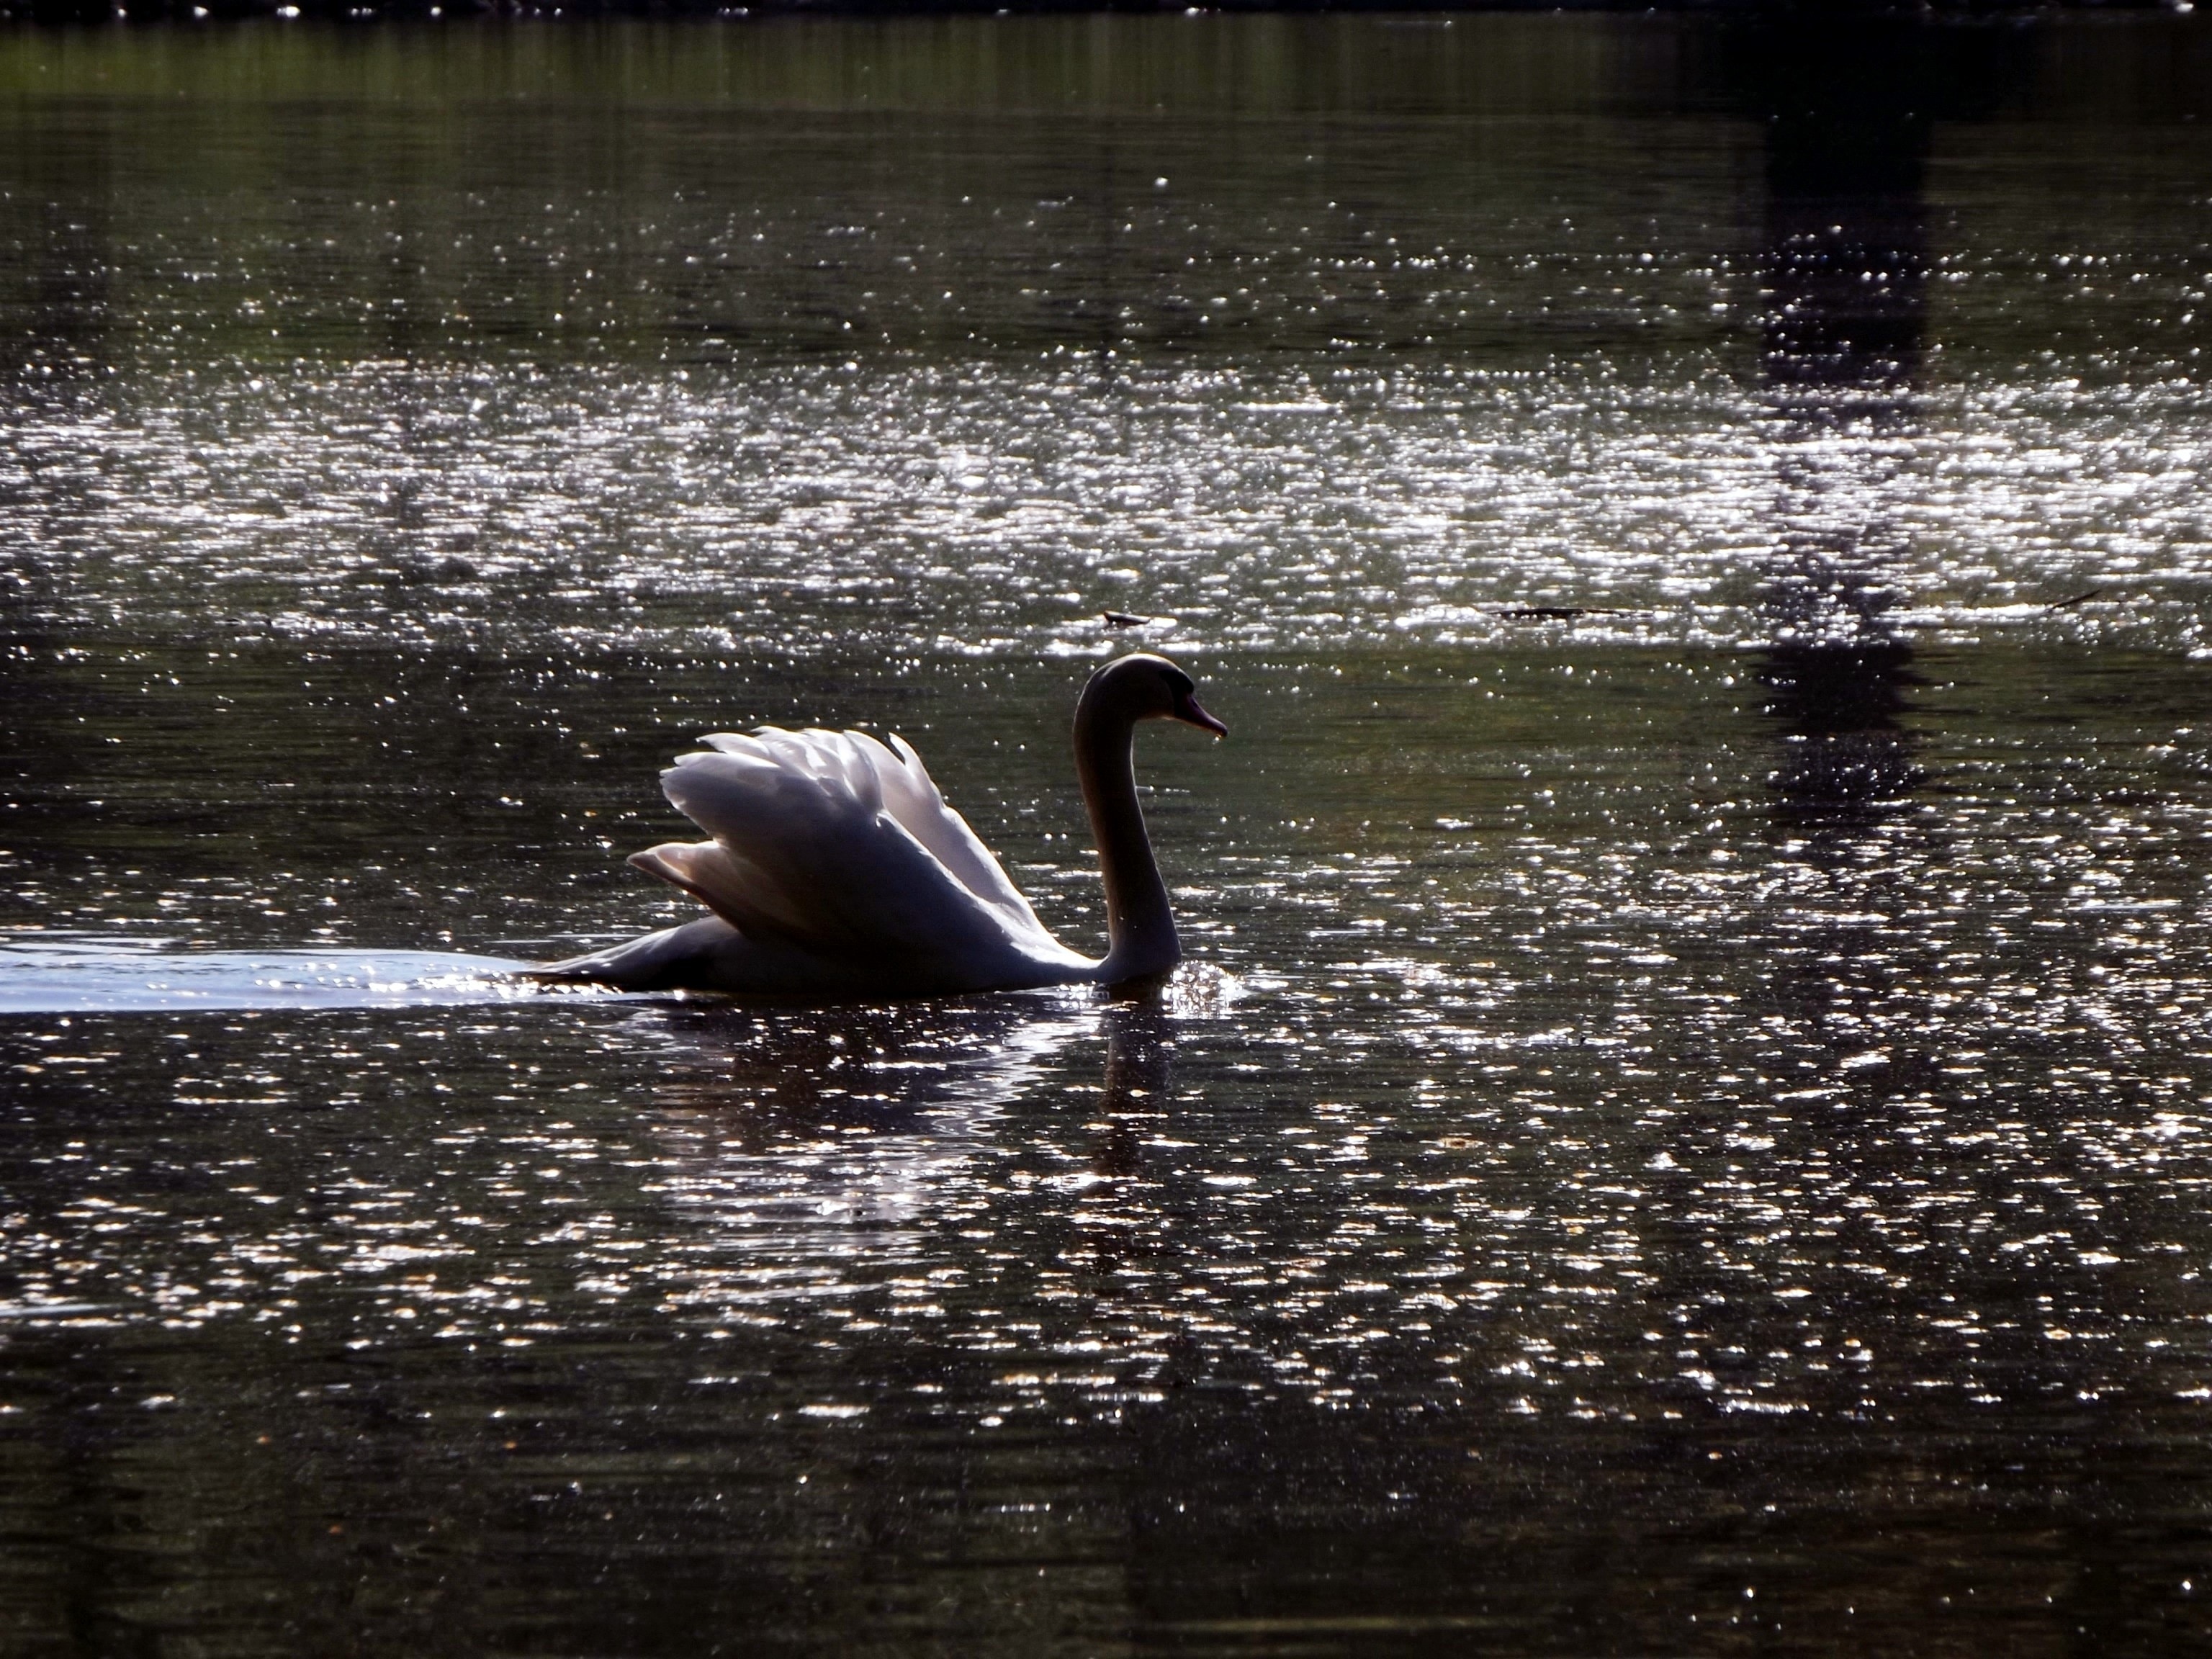 Mattheiser Pond, Pond, Swan, animals in the wild, one animal